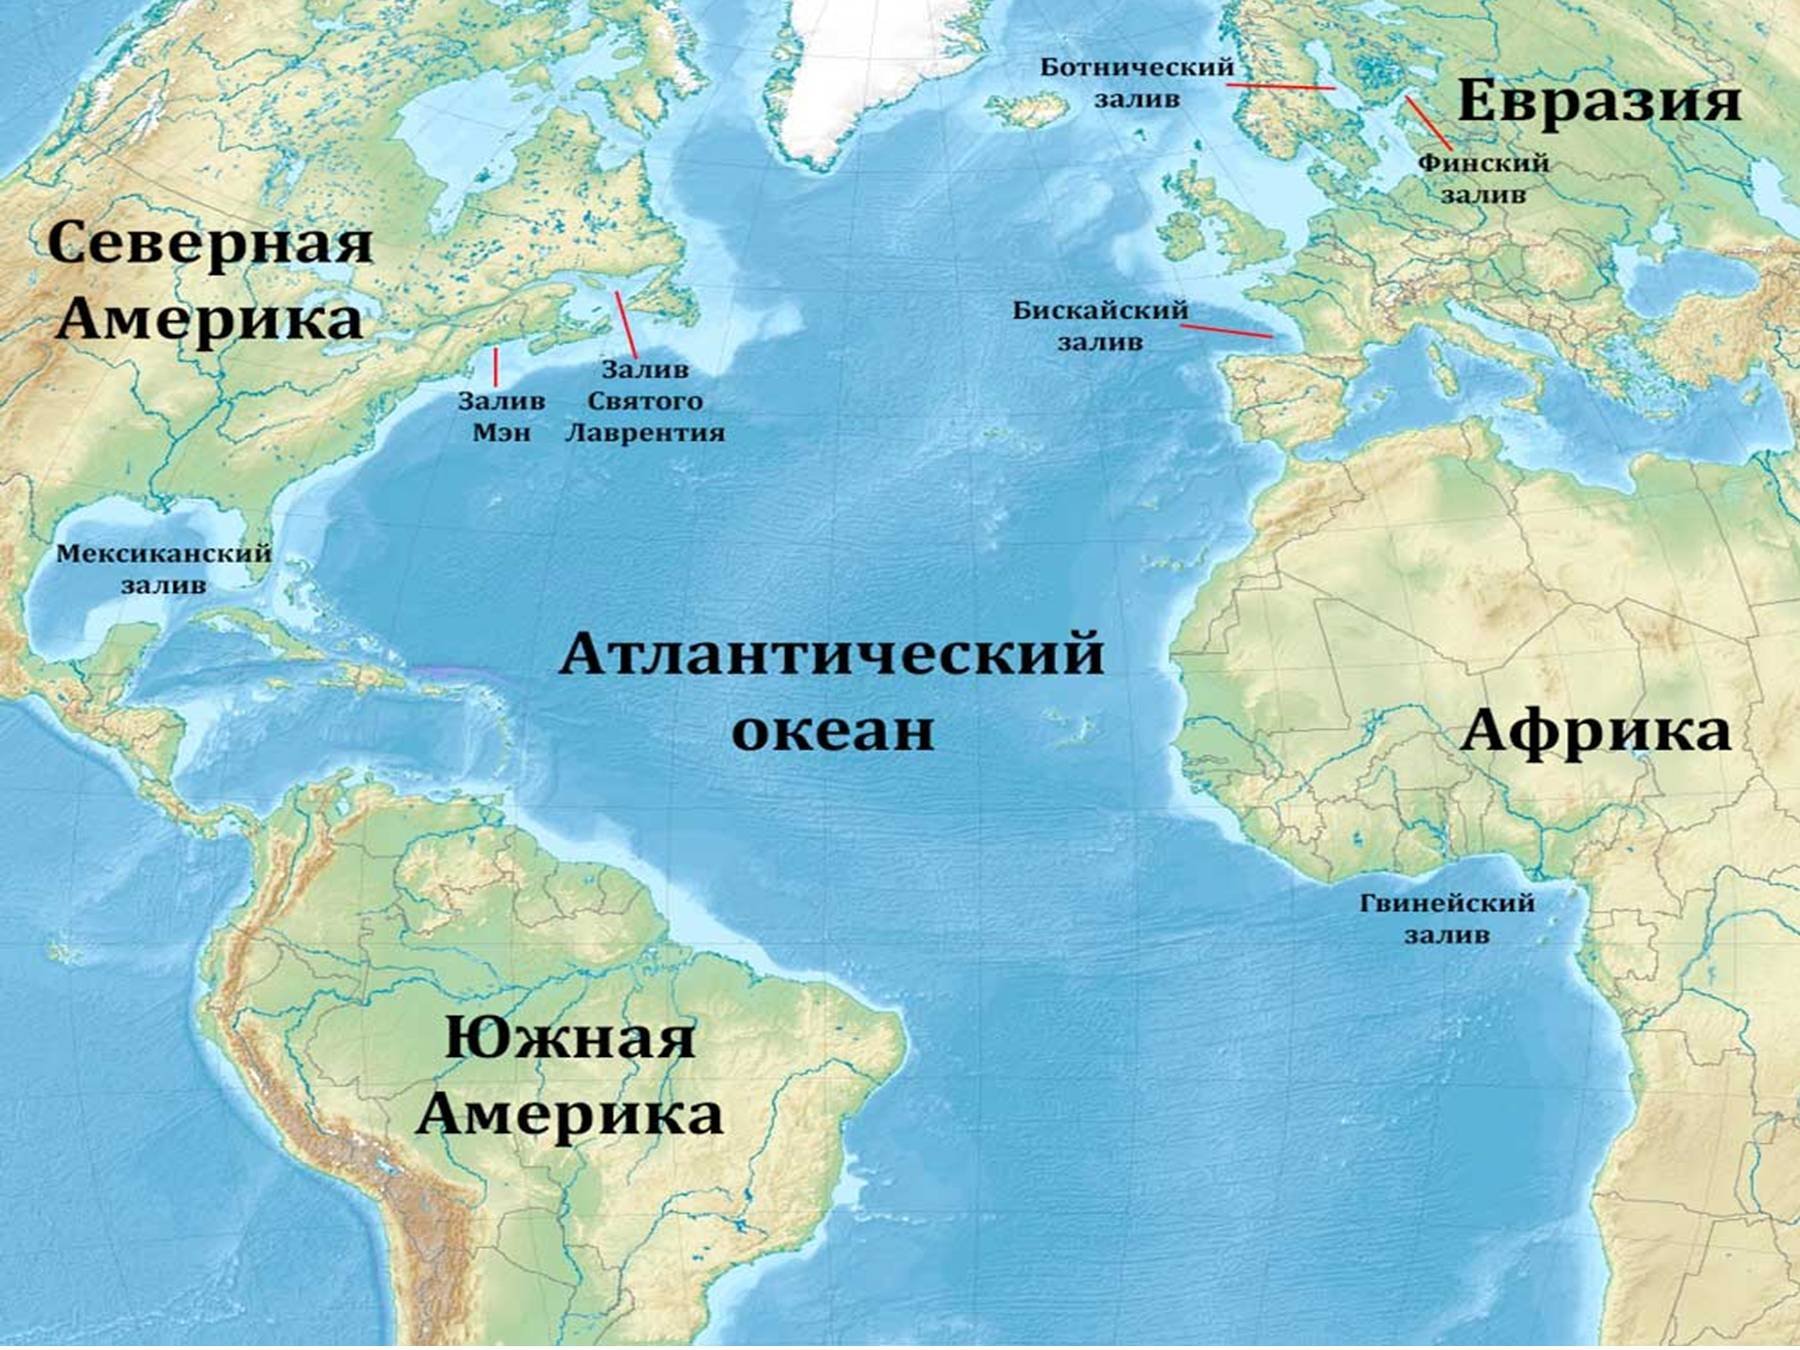 Атлантический океан самый большой остров. Расположение Атлантического океана на карте. Карта Атлантического океана с морями заливами и проливами. Атлантический океан на карте. Атлантическийокеант на карт.